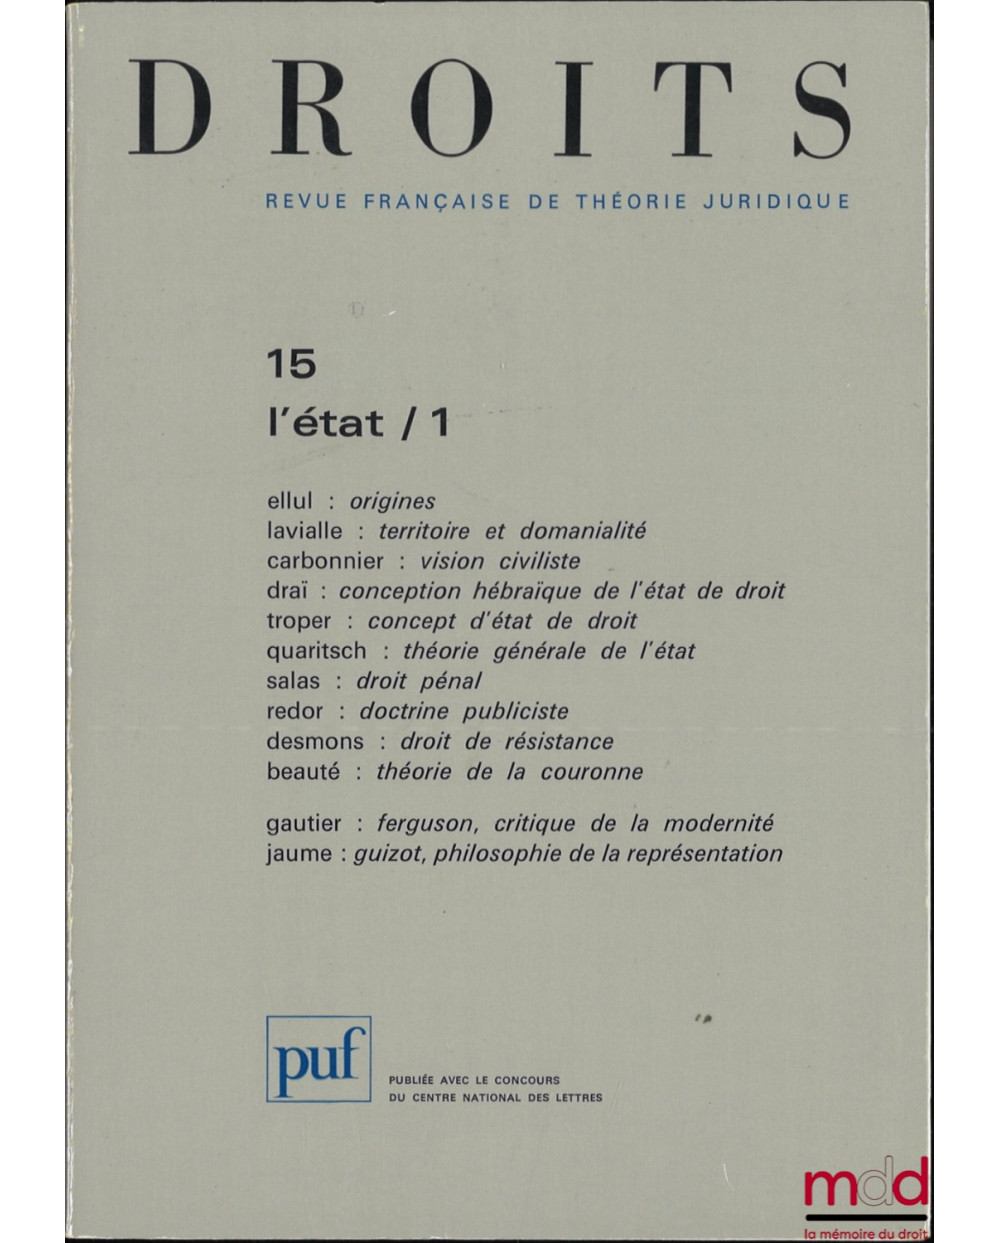 L’ÉTAT, Droits, Revue Française de Théorie Juridique, n° 15/1